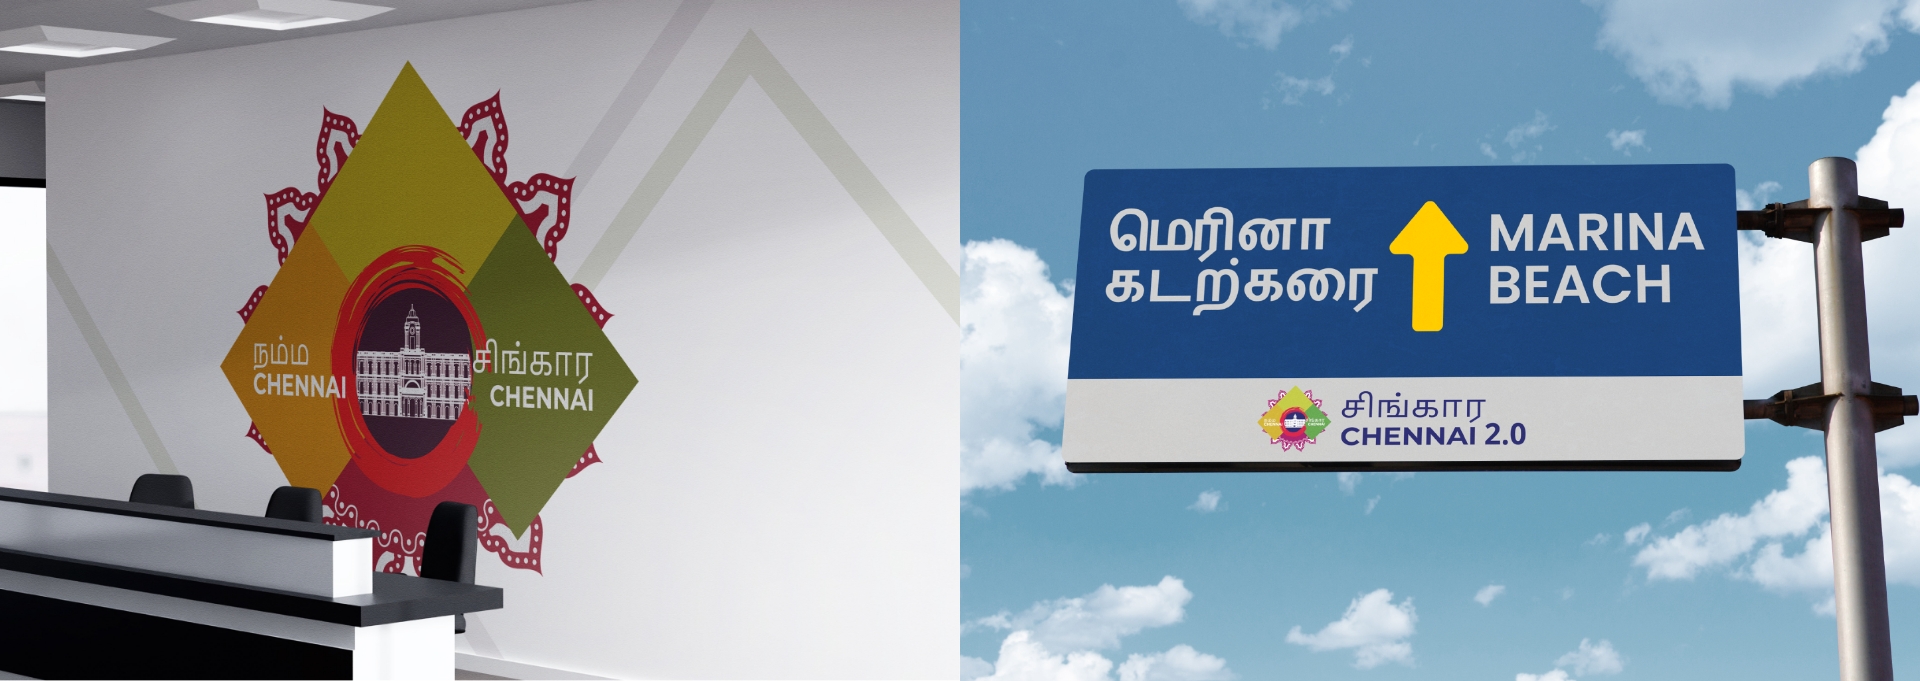 Logo Design Service for Chennai Corporation - Exdera.com